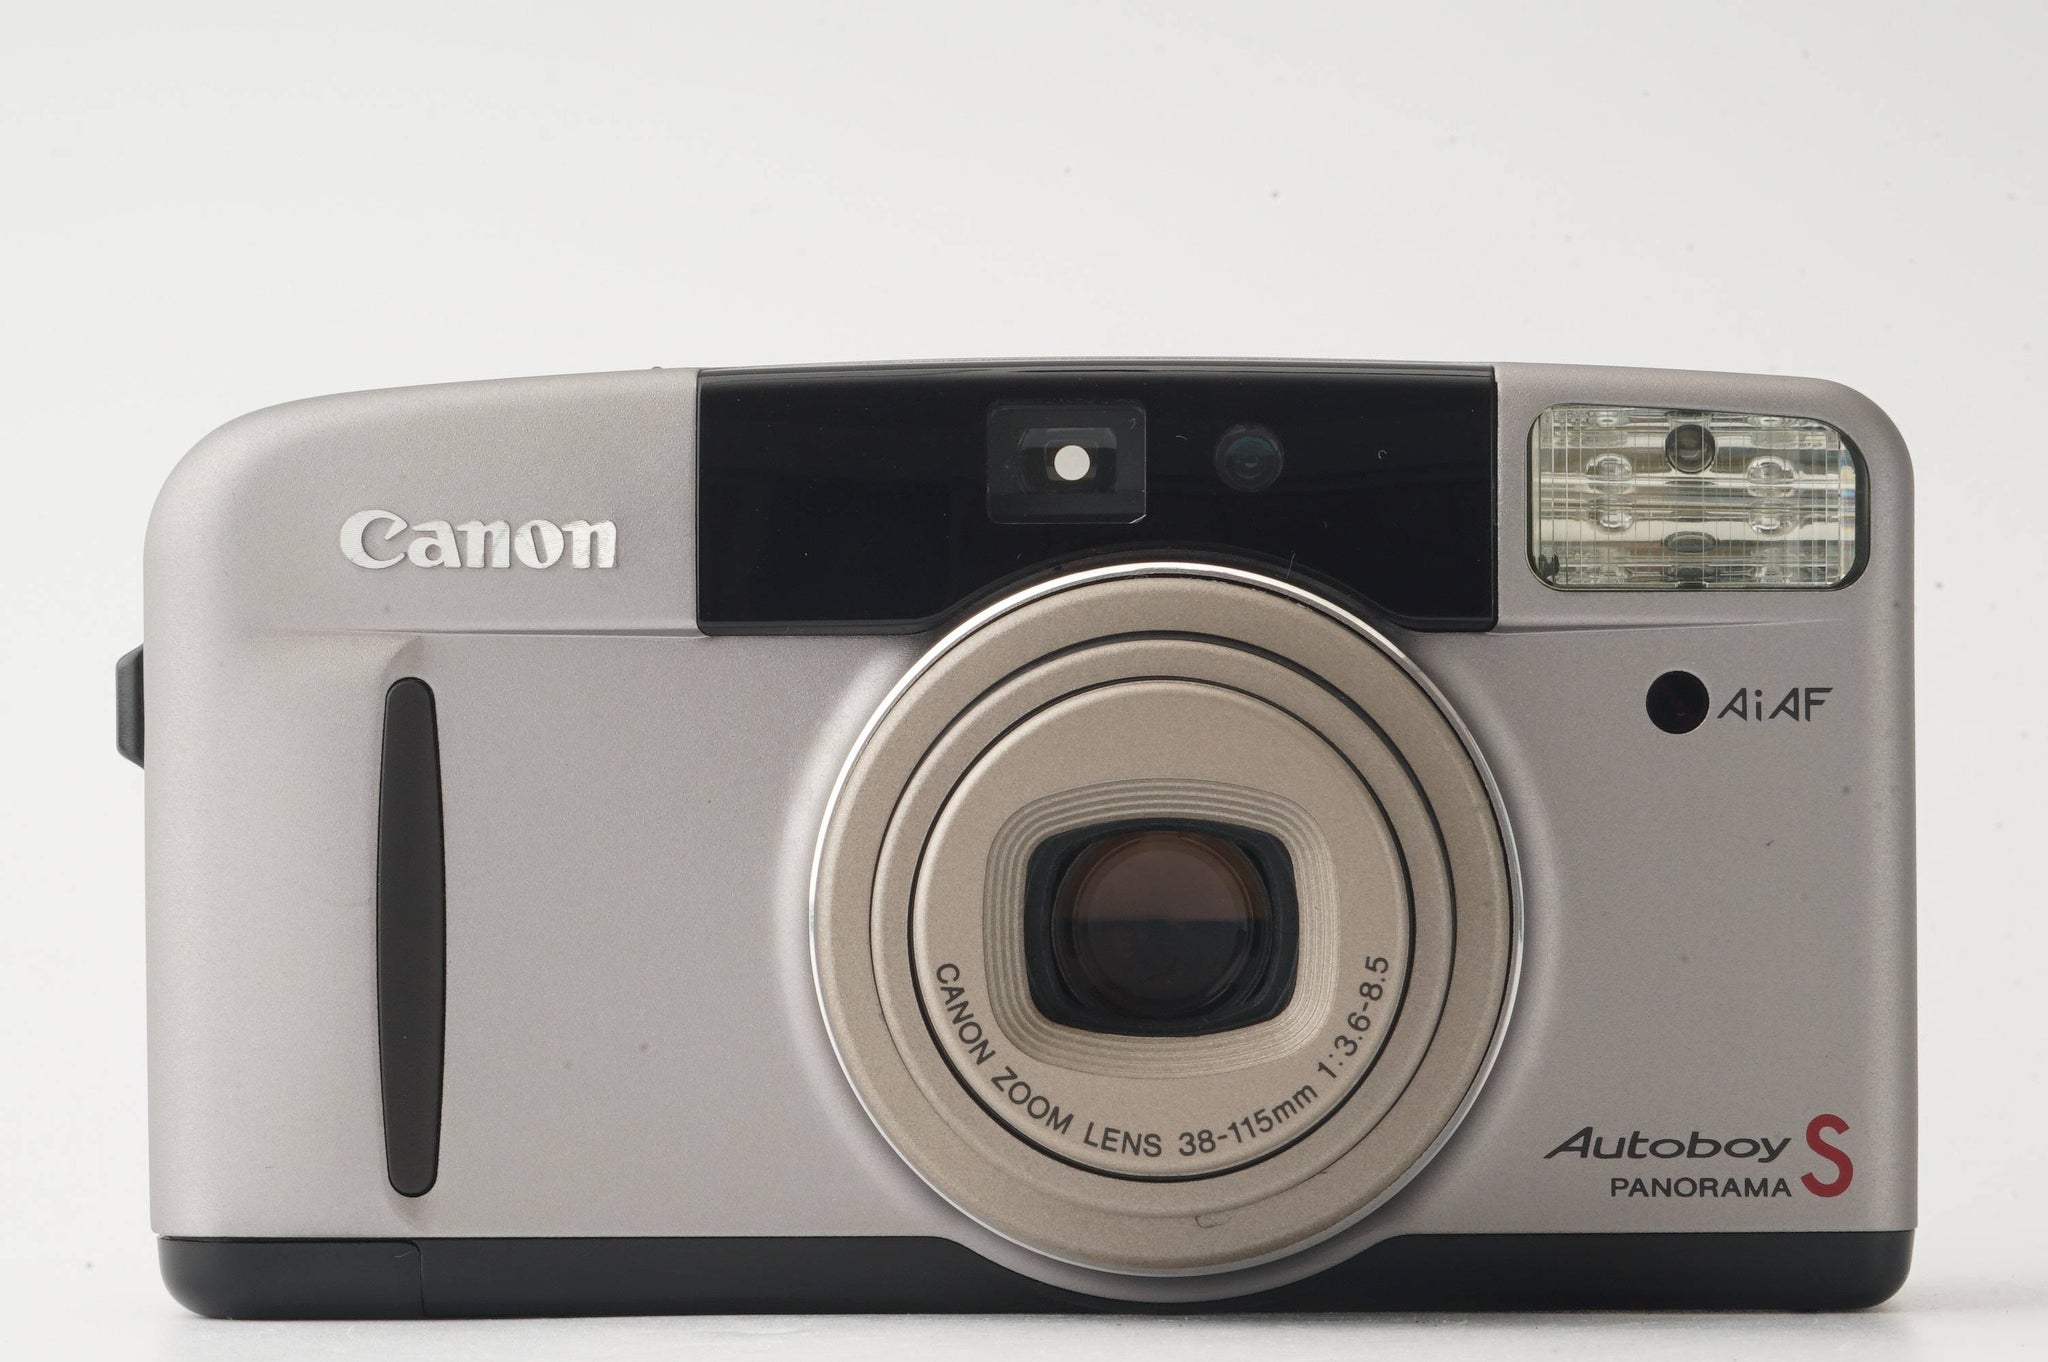 美品】 Canon キャノン Autoboy S PANORAMAautboys - フィルムカメラ